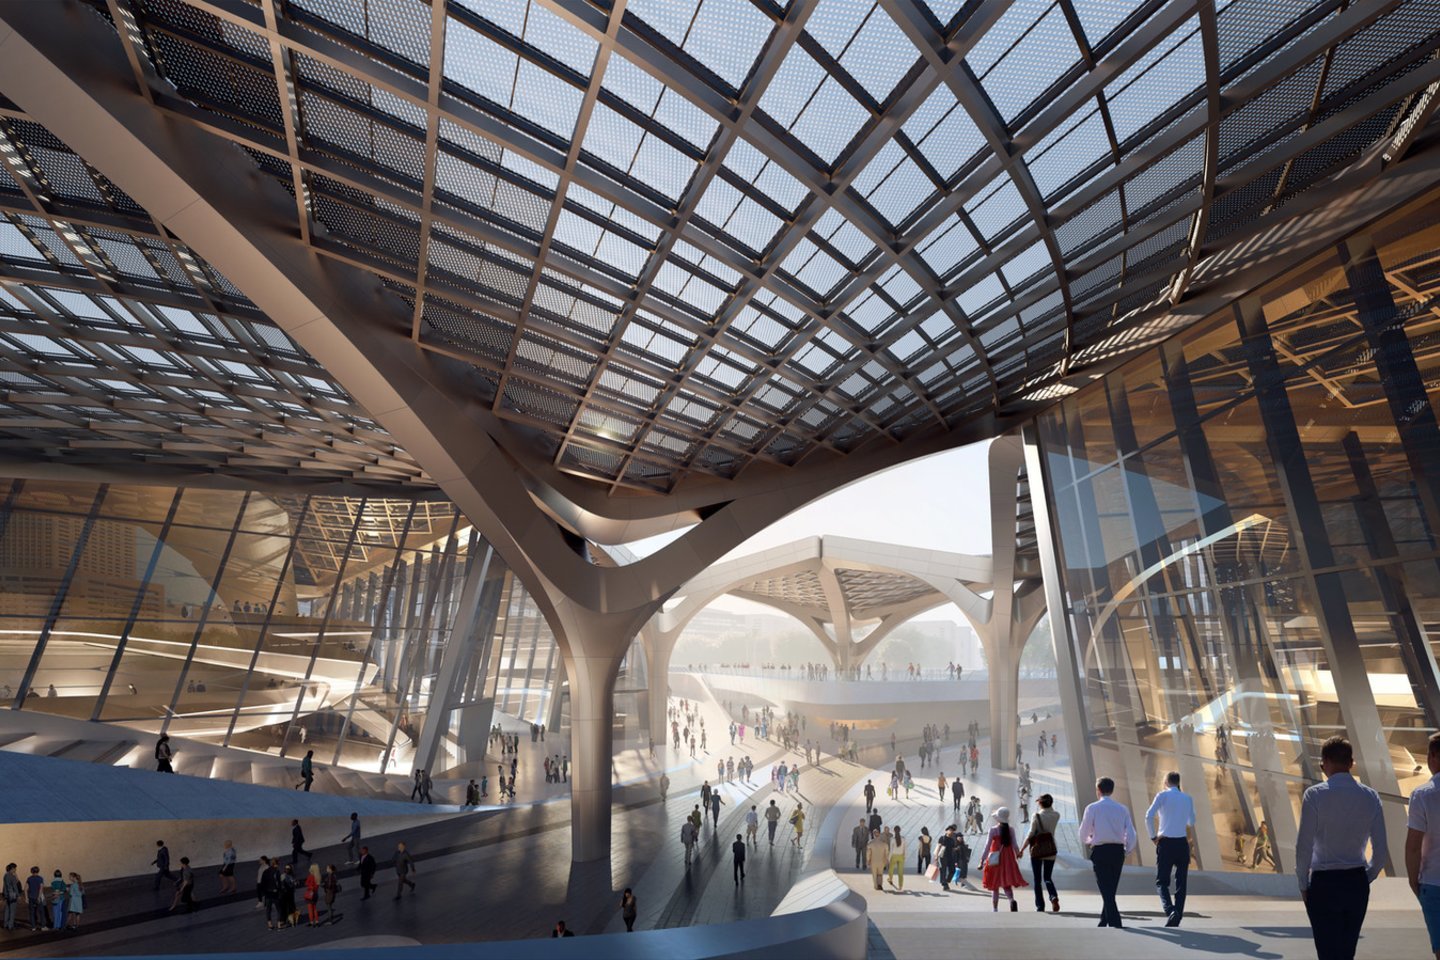 Šiais metais bus baigtas statyti „Zaha Hadid Architects“ projektuotas Zhuhai Jinwan Civic Art Centre virš dirbtinio ežero Zhuhai mieste, pietų Kinijoje.<br>Zaha Hadid Architects / archdaily.com vizual. ir nuotr.